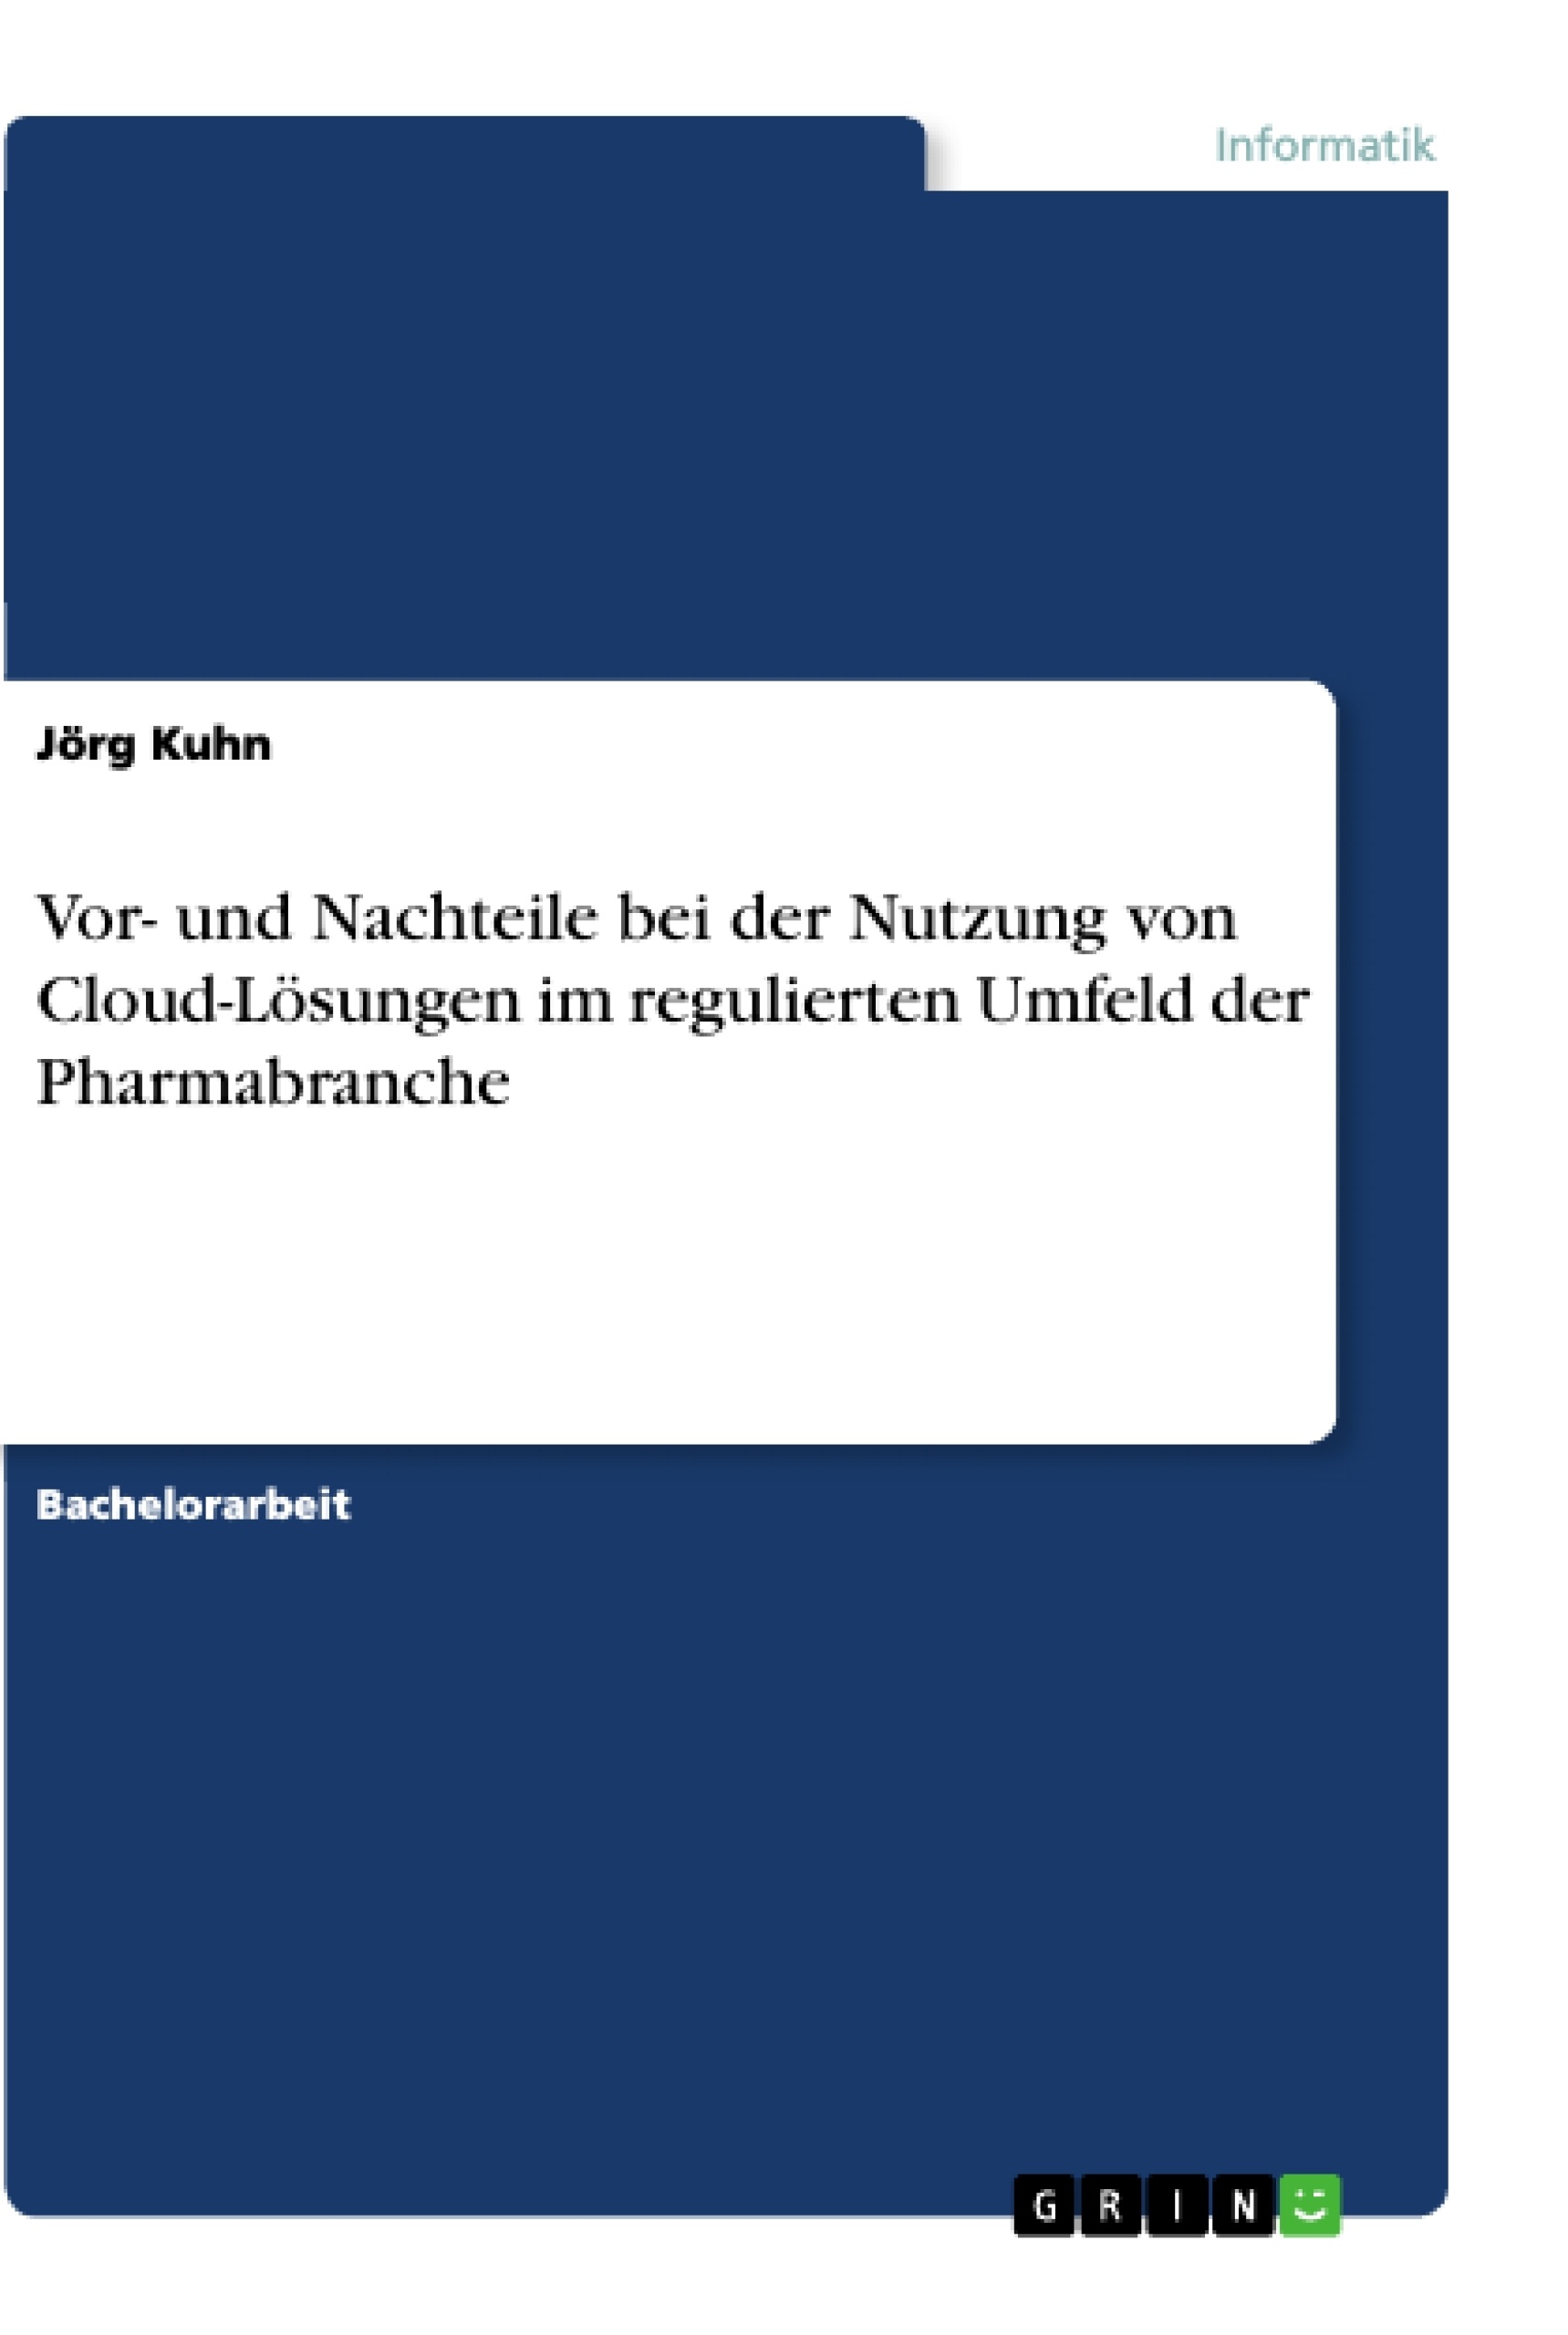 Título: Vor- und Nachteile bei der Nutzung von Cloud-Lösungen im regulierten Umfeld der Pharmabranche